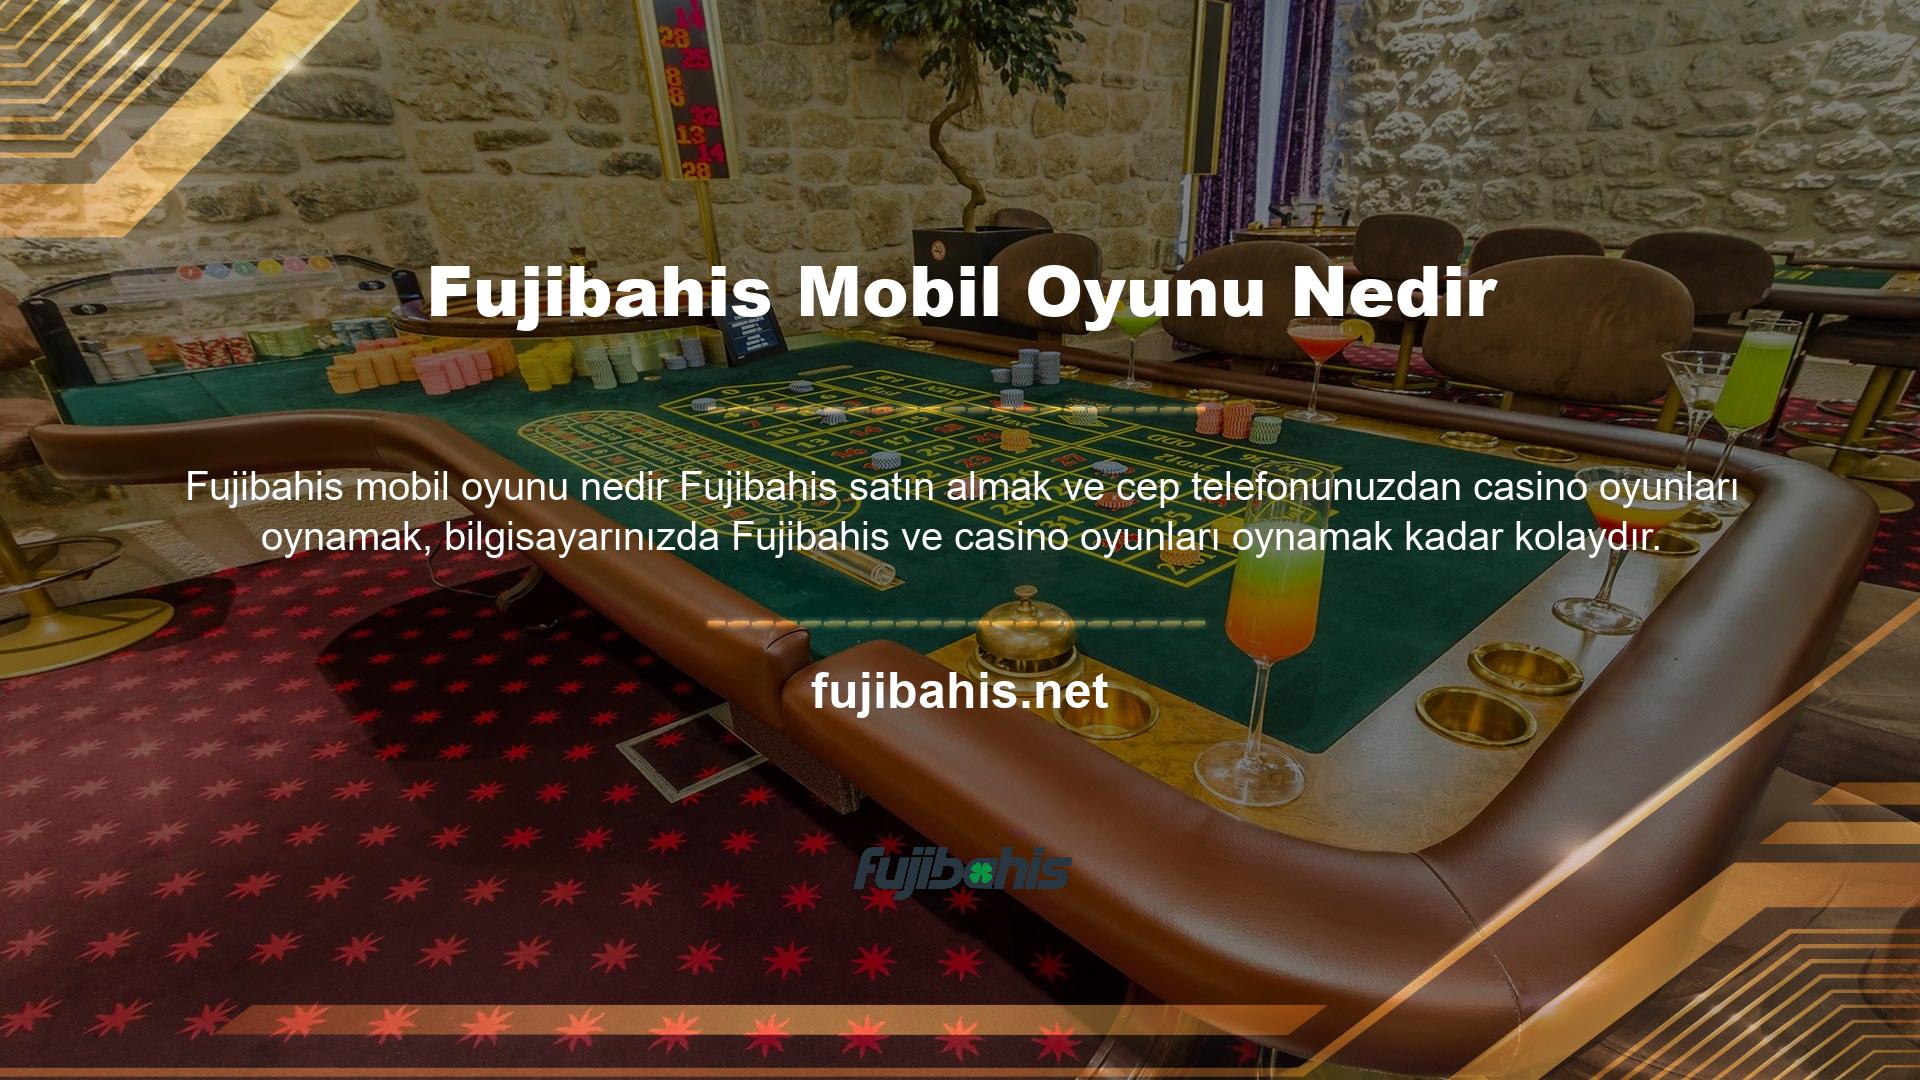 Fujibahis Mobil'de oynayabileceğiniz ve kazanabileceğiniz oyunlar arasında spor bahisleri, canlı spor, casino oyunları, canlı casino oyunları, Fujibahis mobil oyunları, sanal bahisler ve daha fazlası yer almaktadır